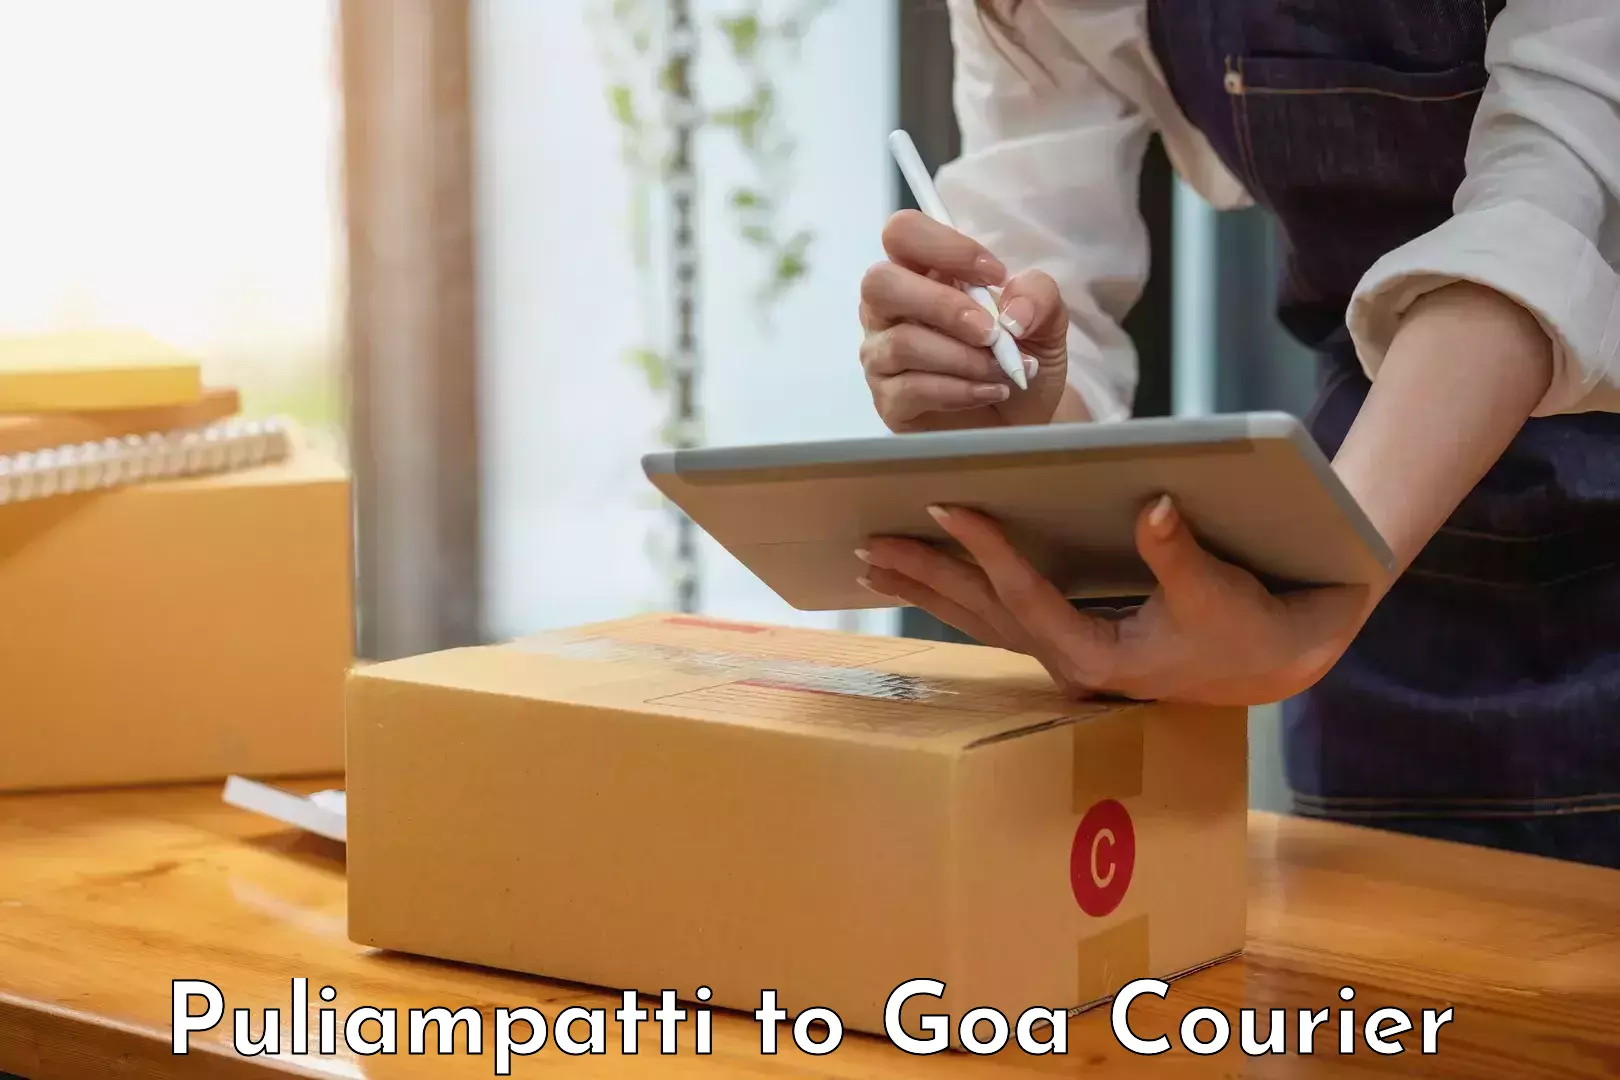 Fast delivery service Puliampatti to NIT Goa